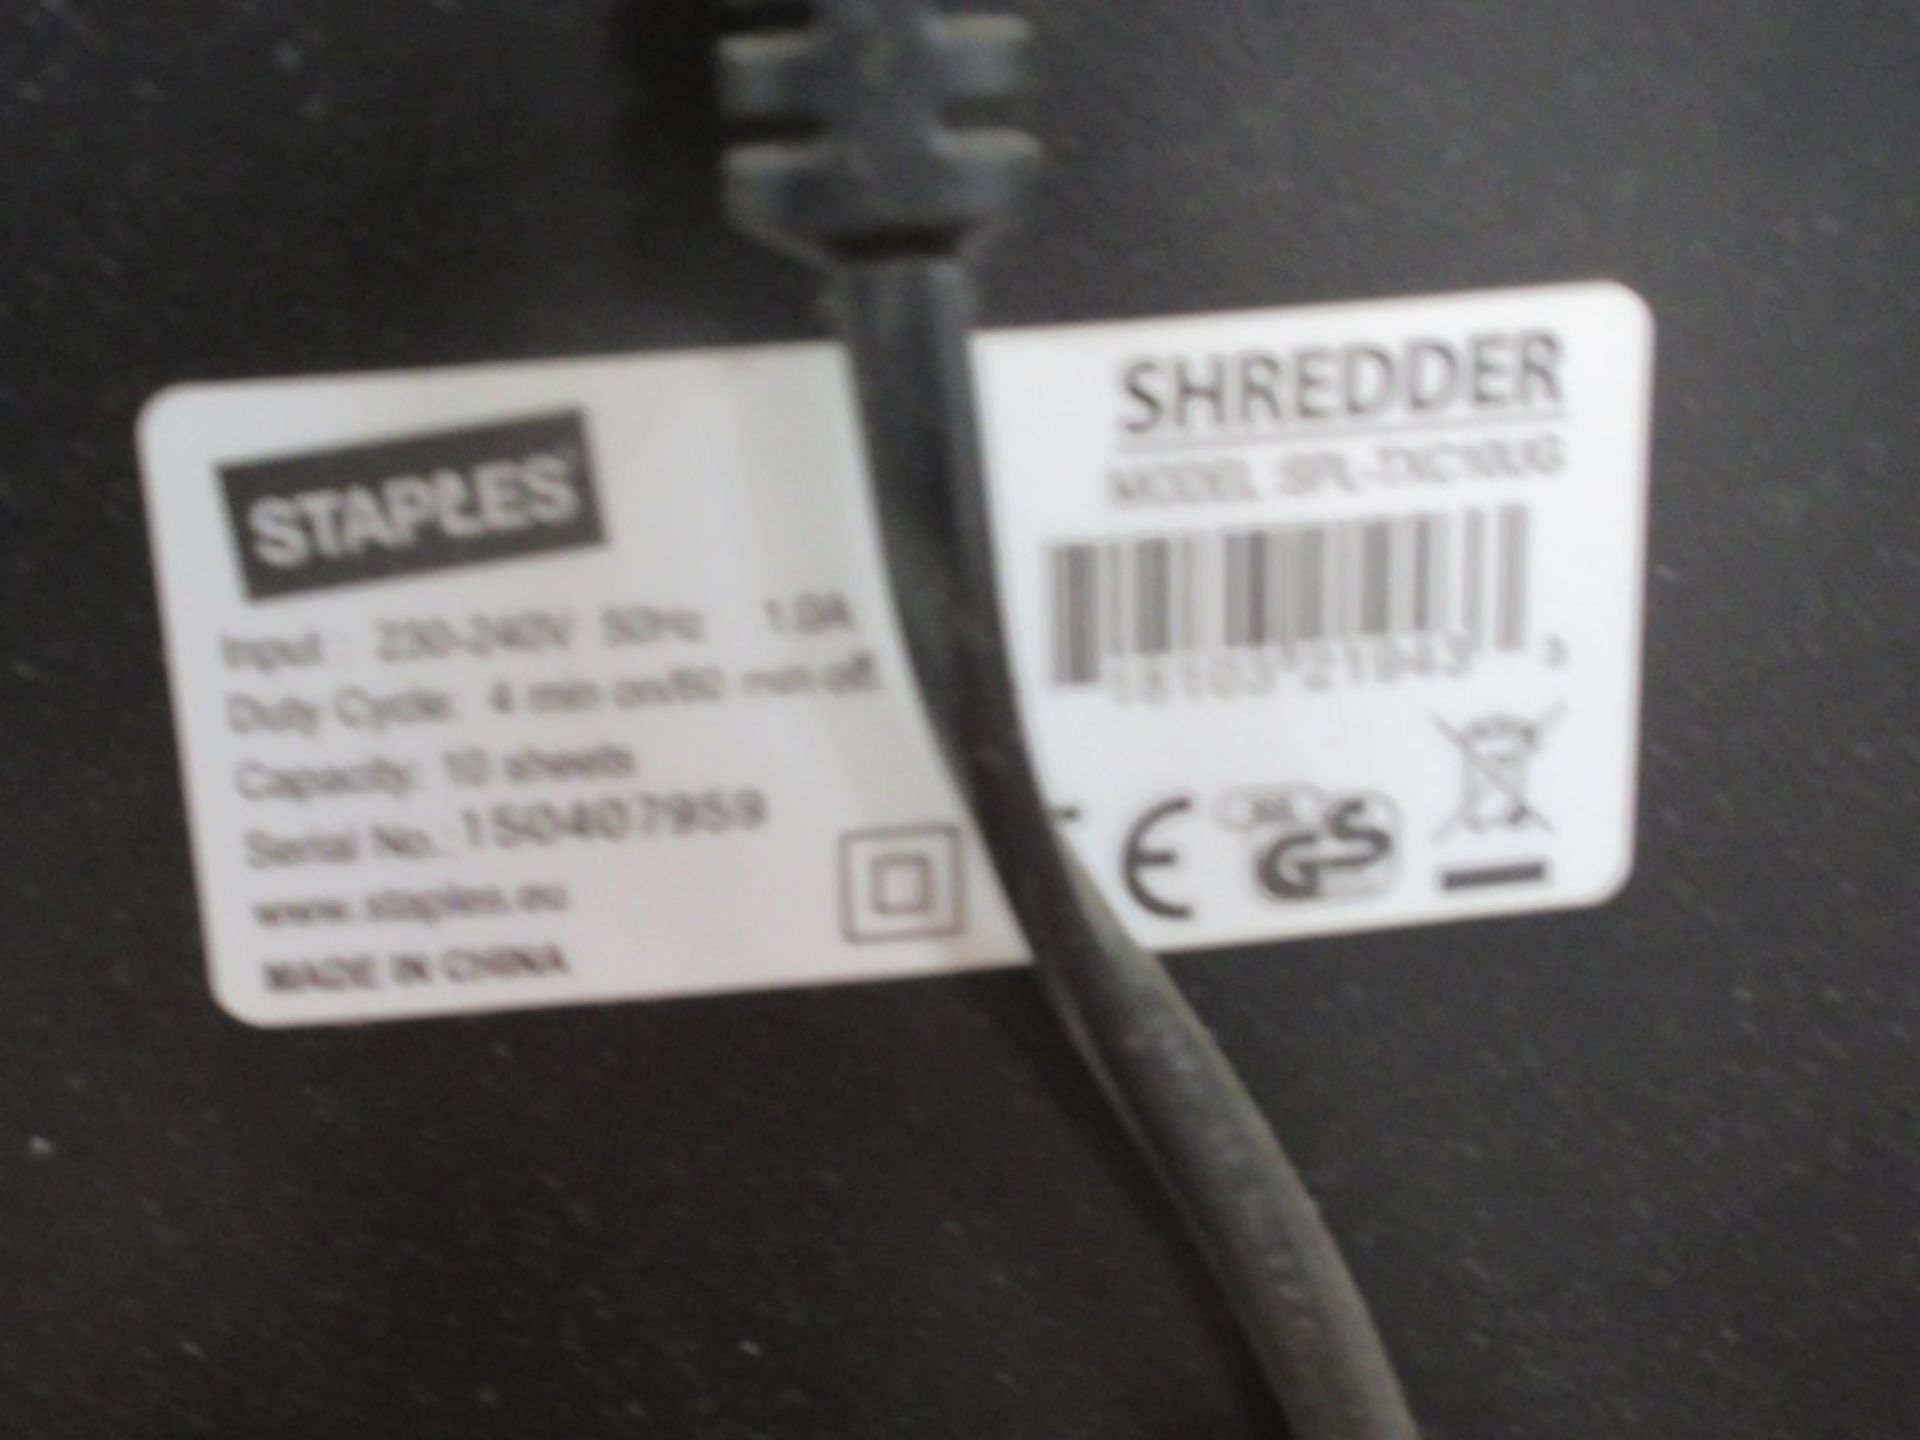 Staples paper shredder - Image 2 of 3